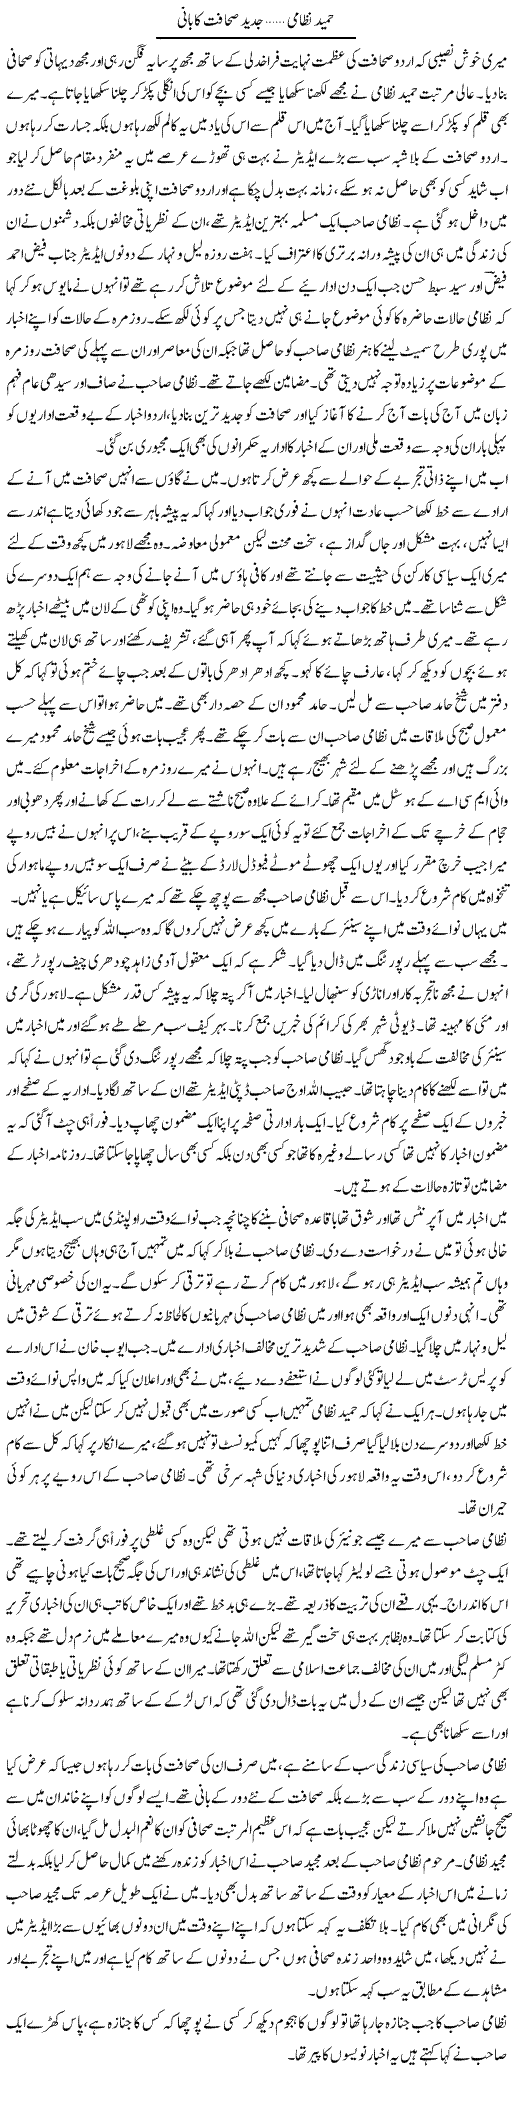 Hameed Nizami Jadeed Sahafat Ka Bani | Abdul Qadir Hassan | Daily Urdu Columns